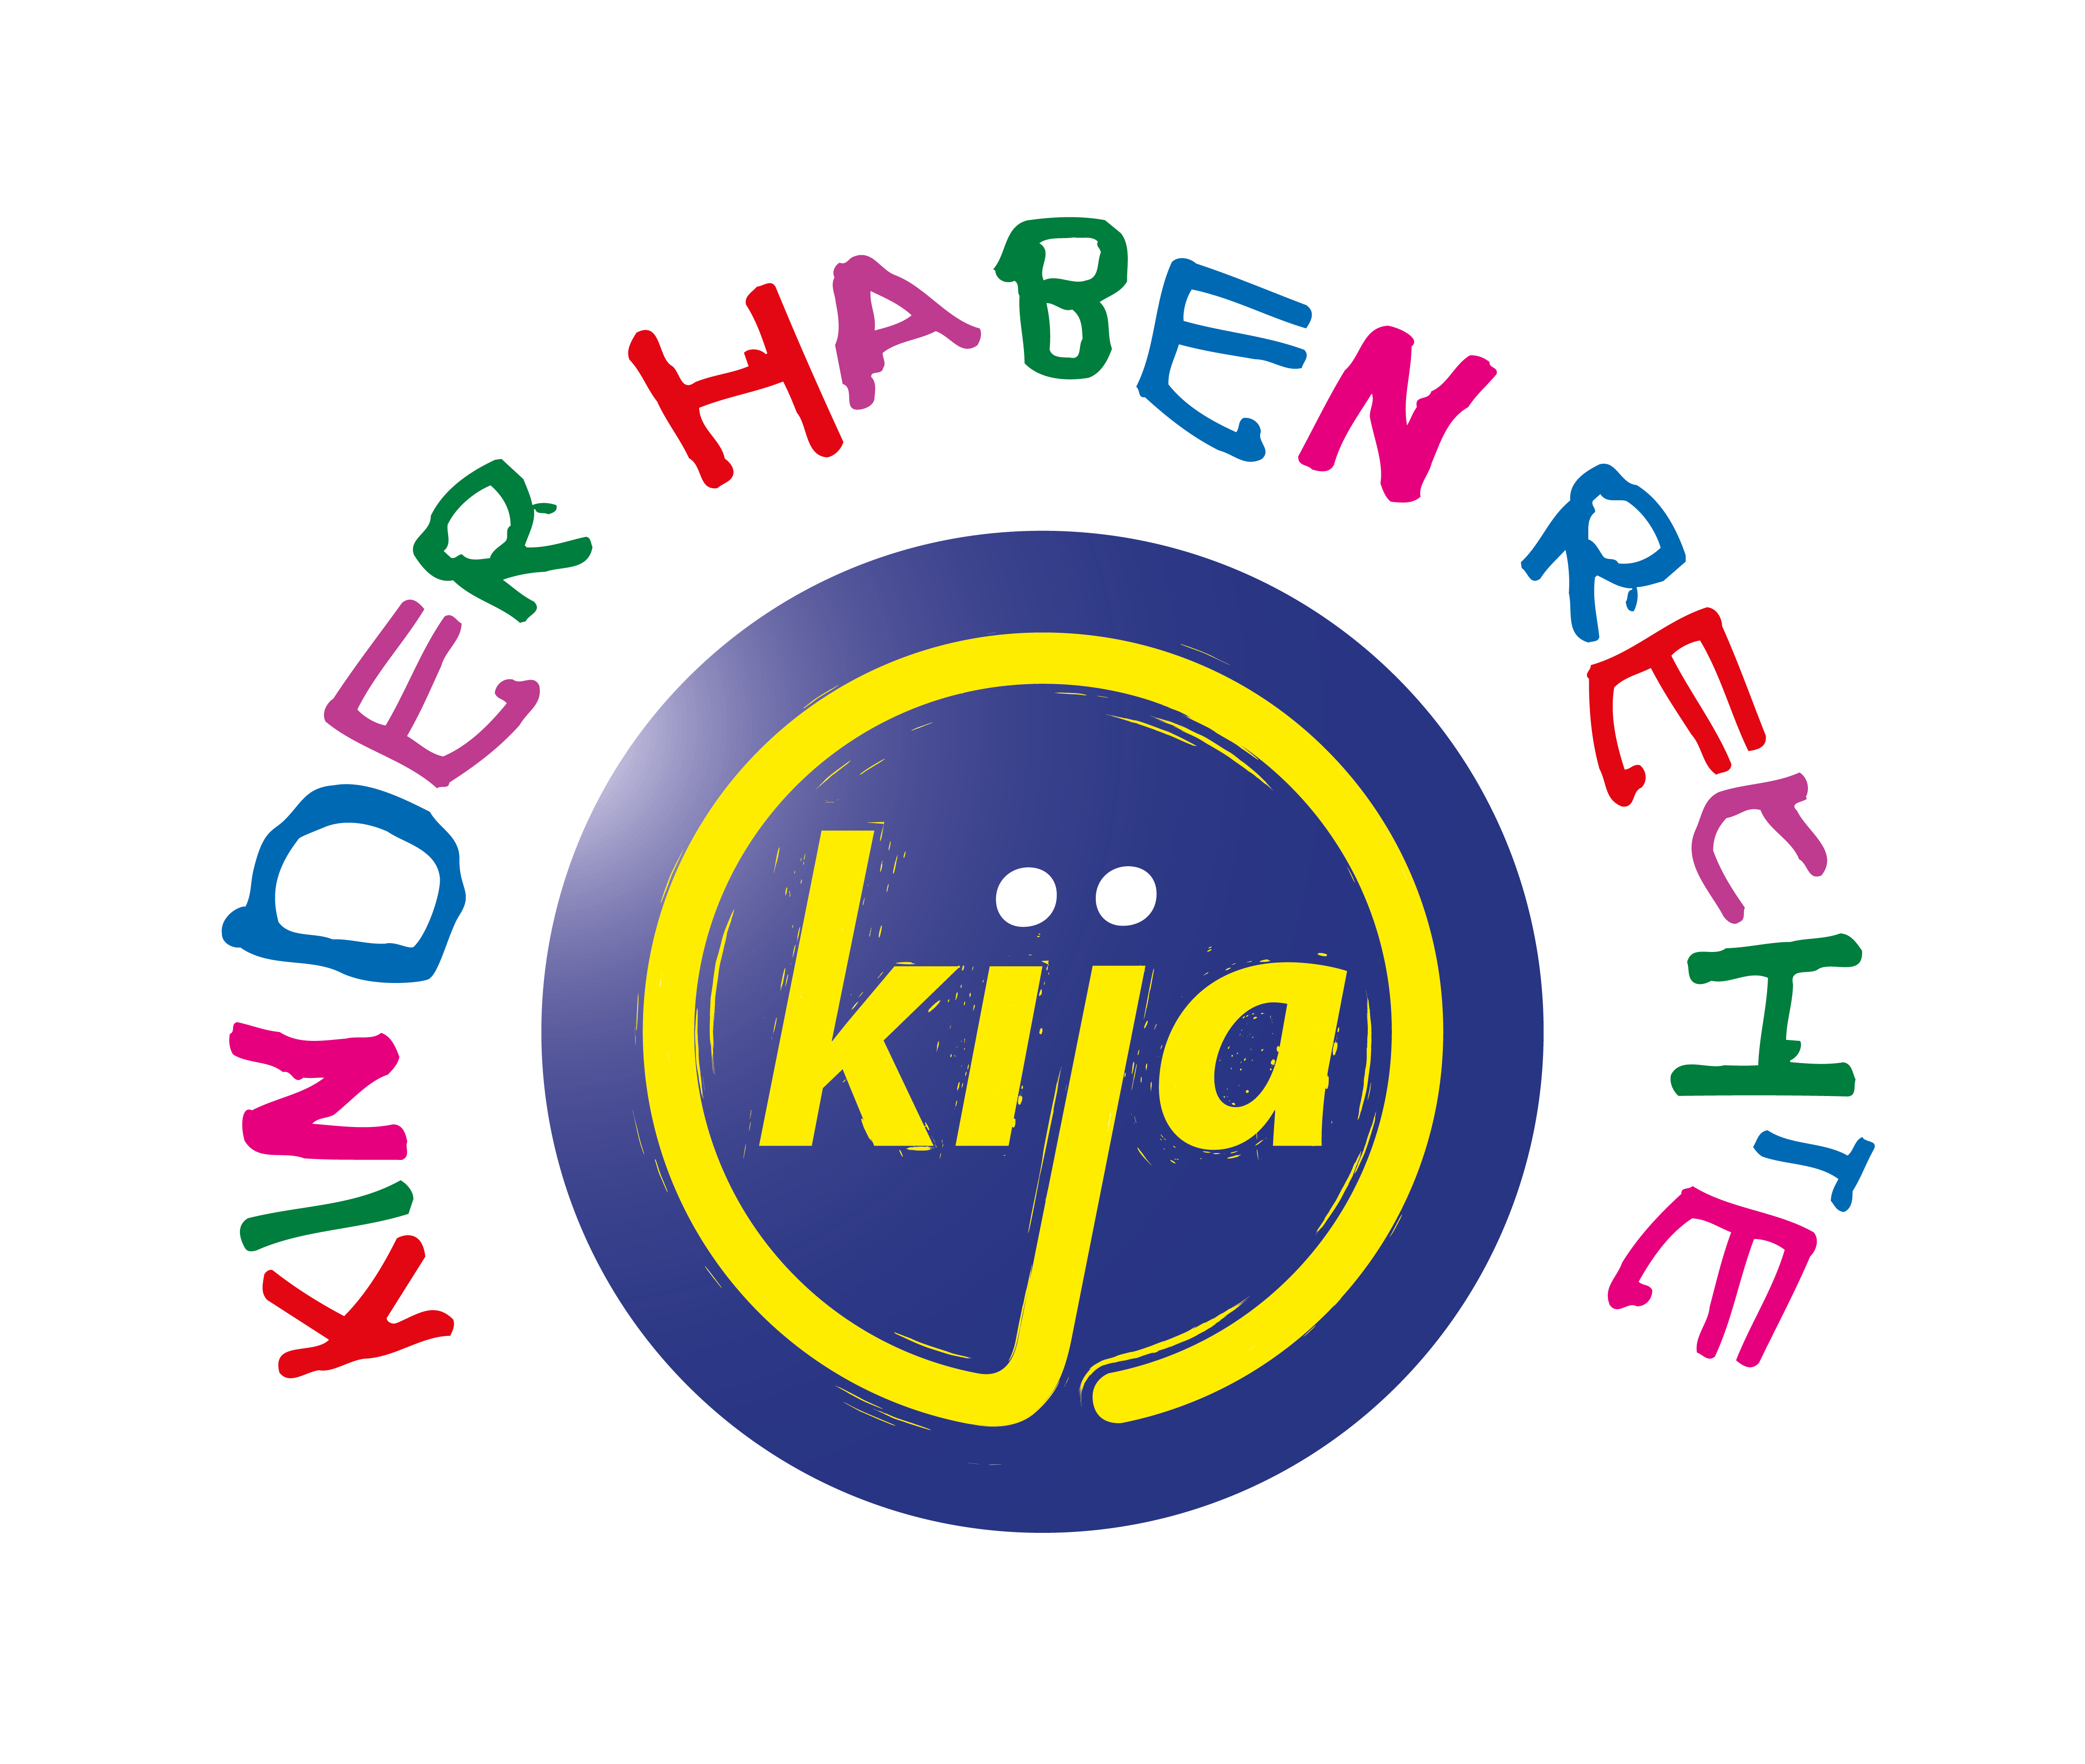 NÖ kija-Logo, gelbe Schrift "NÖ kija" in blauen Kreis und außen halbrund "Kinder haben Rechte" in bunter Schrift